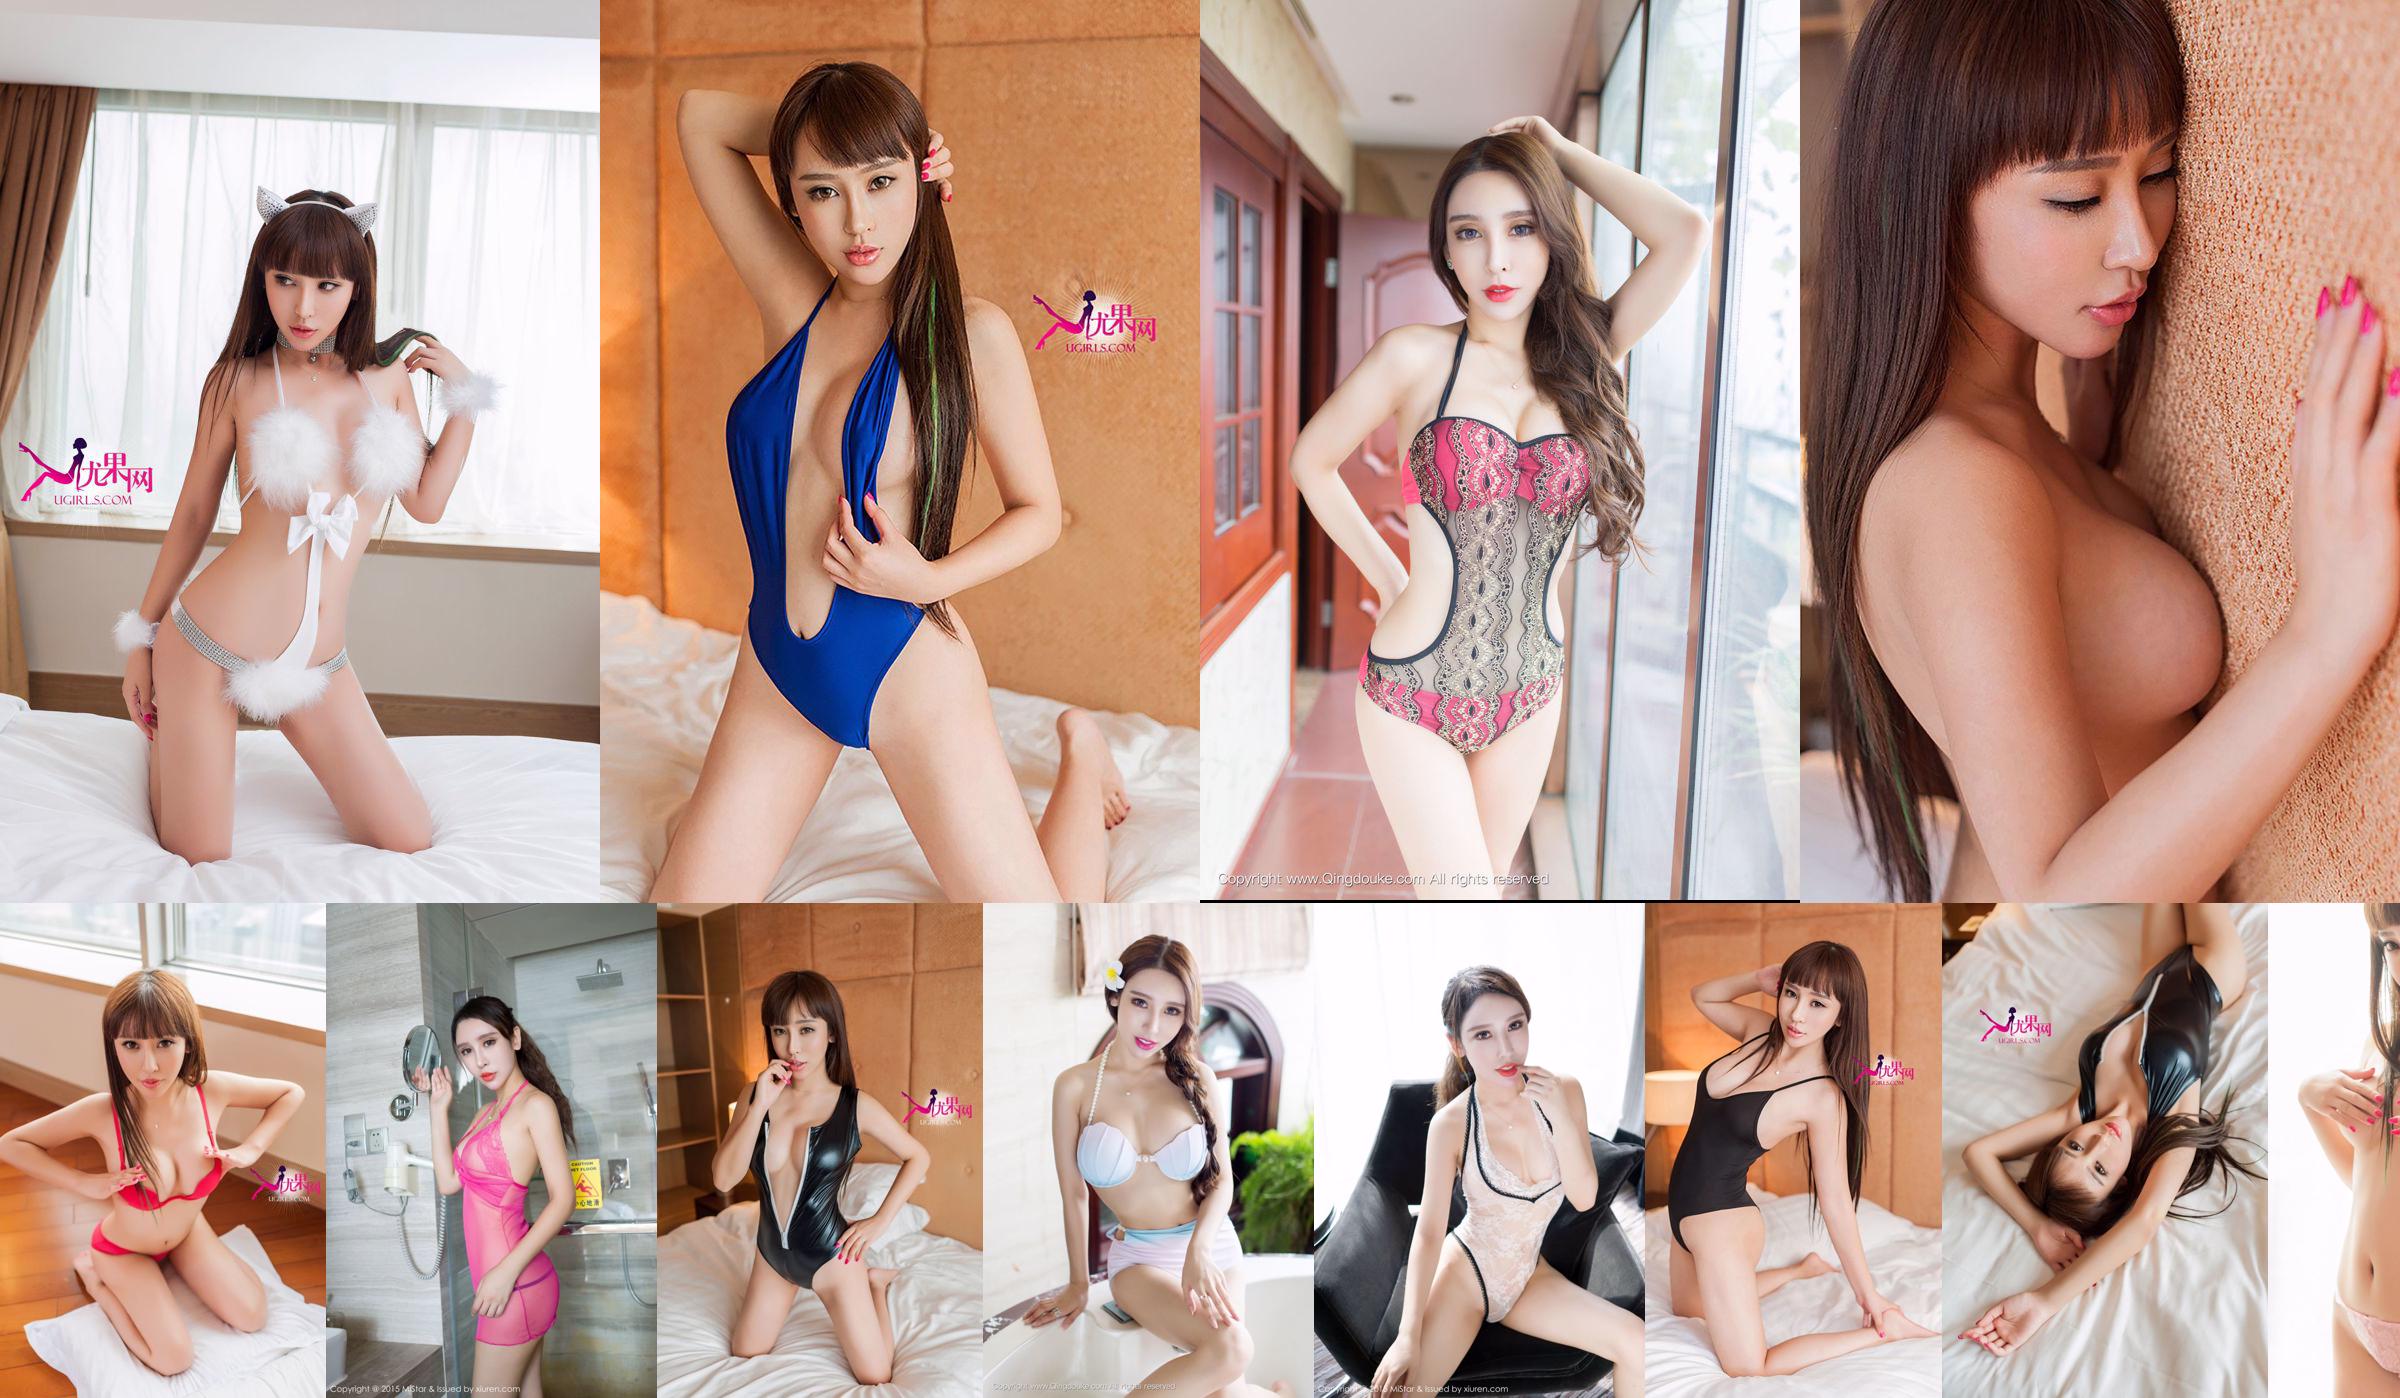 Yang Nuoyi "Uniform + Sexy Lingerie" [MiStar] Vol.053 No.99efca Page 1